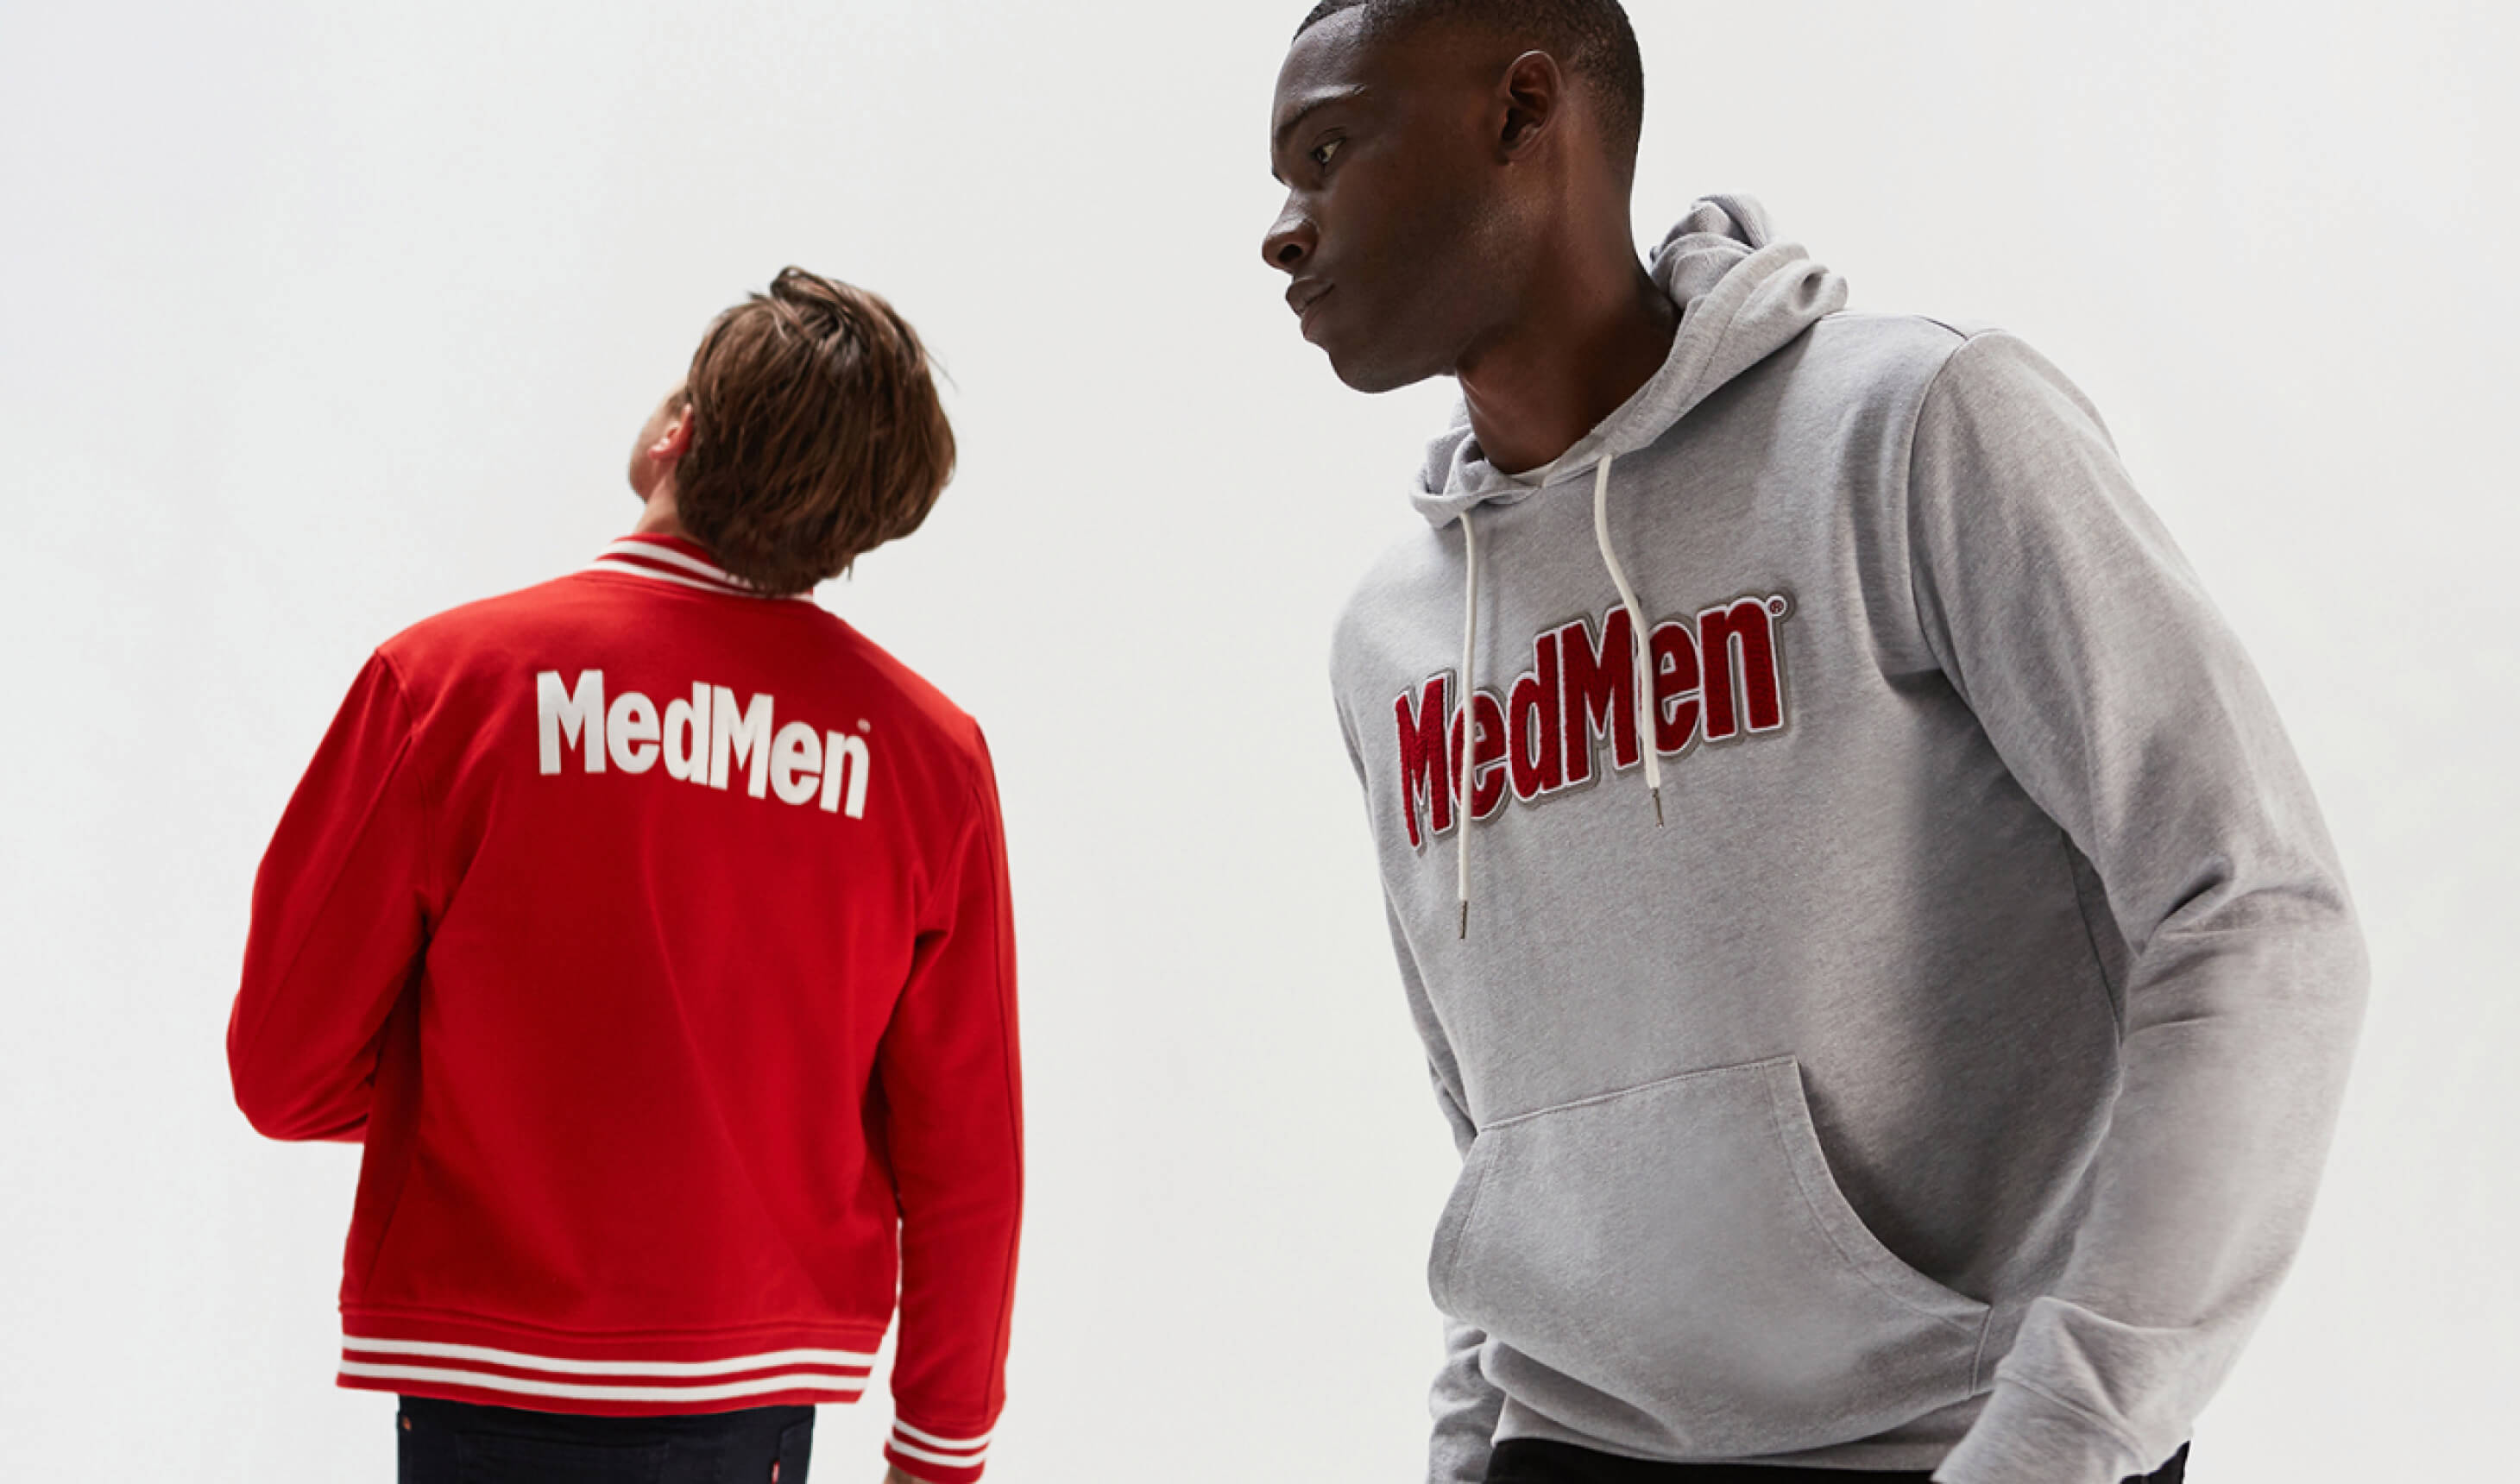 Two men wearing MedMen jackets